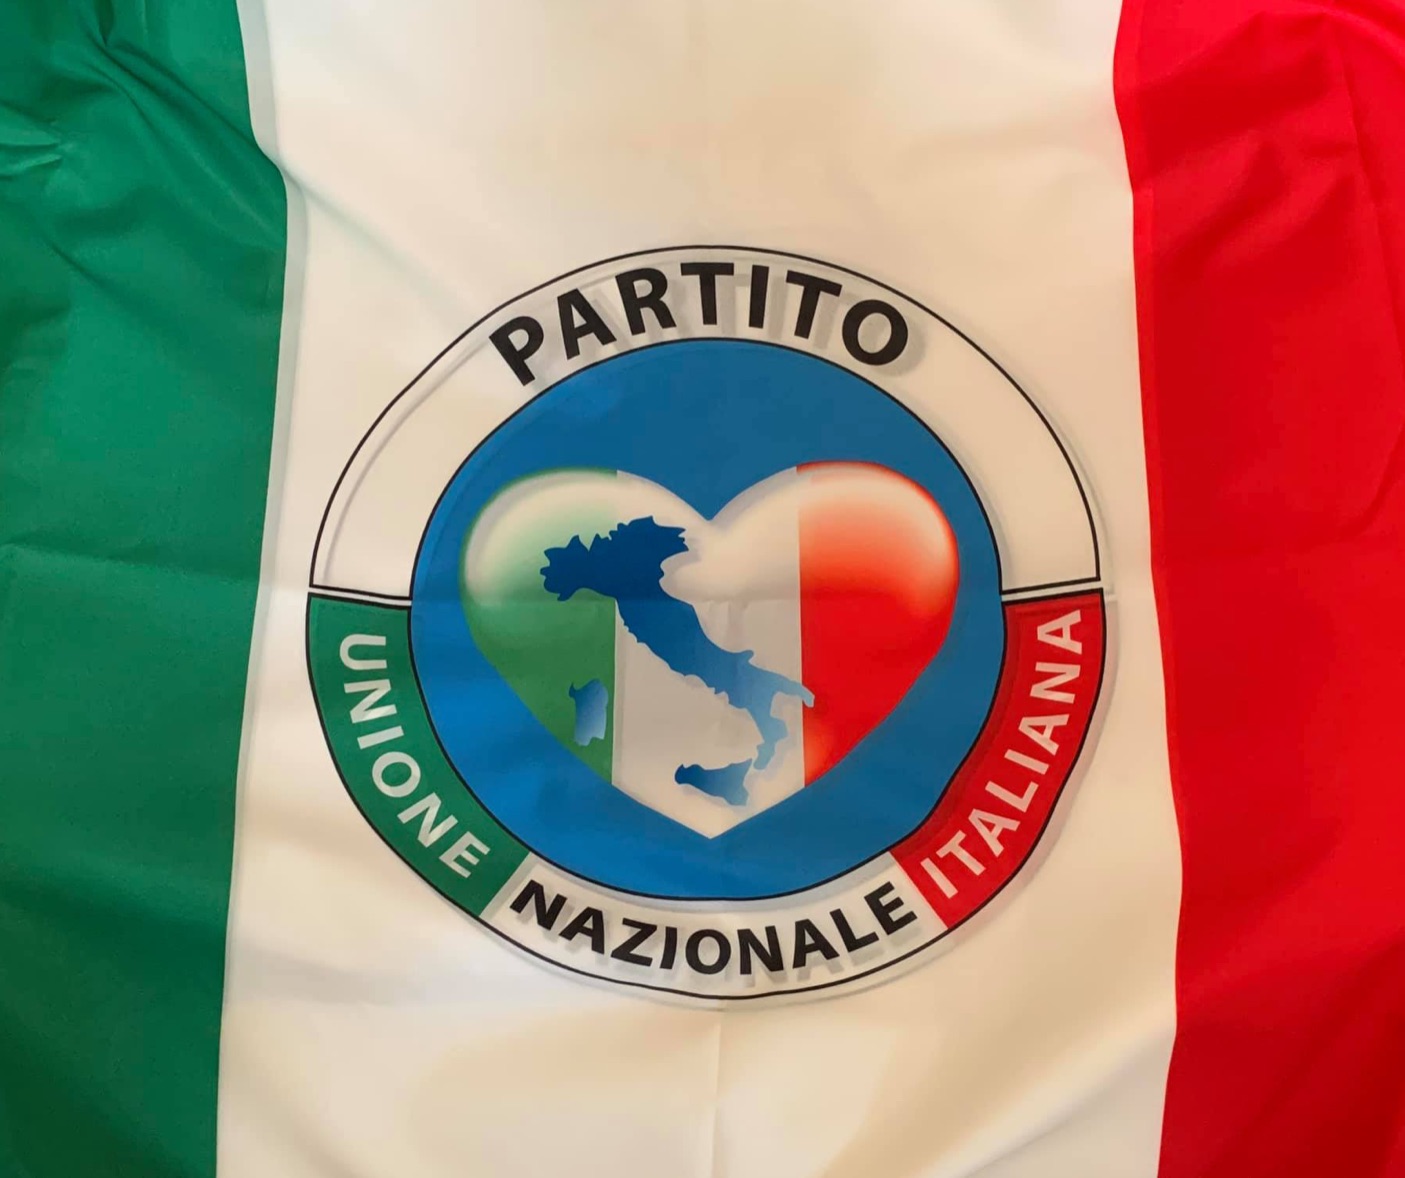 L'attuale governo italiano ha tutti i caratteri di un regime totalitario e l'Italia è sul lastrico